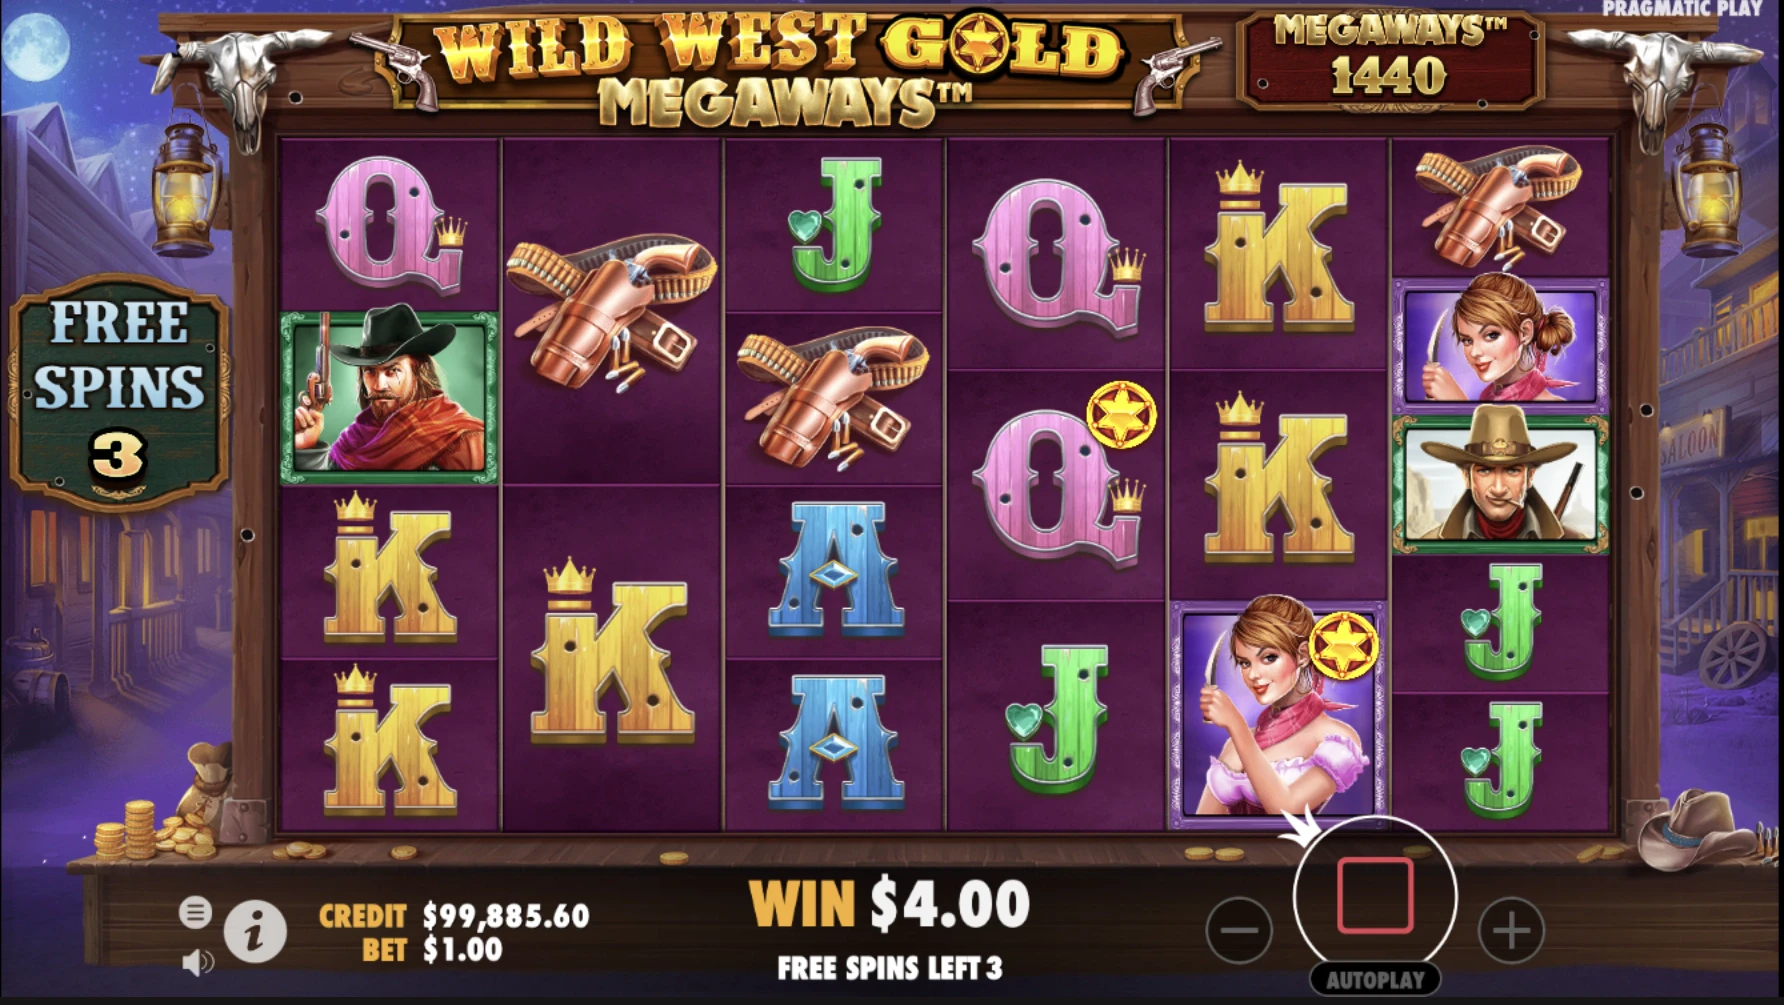 Obtention de parties gratuites supplémentaires sur la machine a sous Wild West Gold Megaways du provider Pragmatic Play